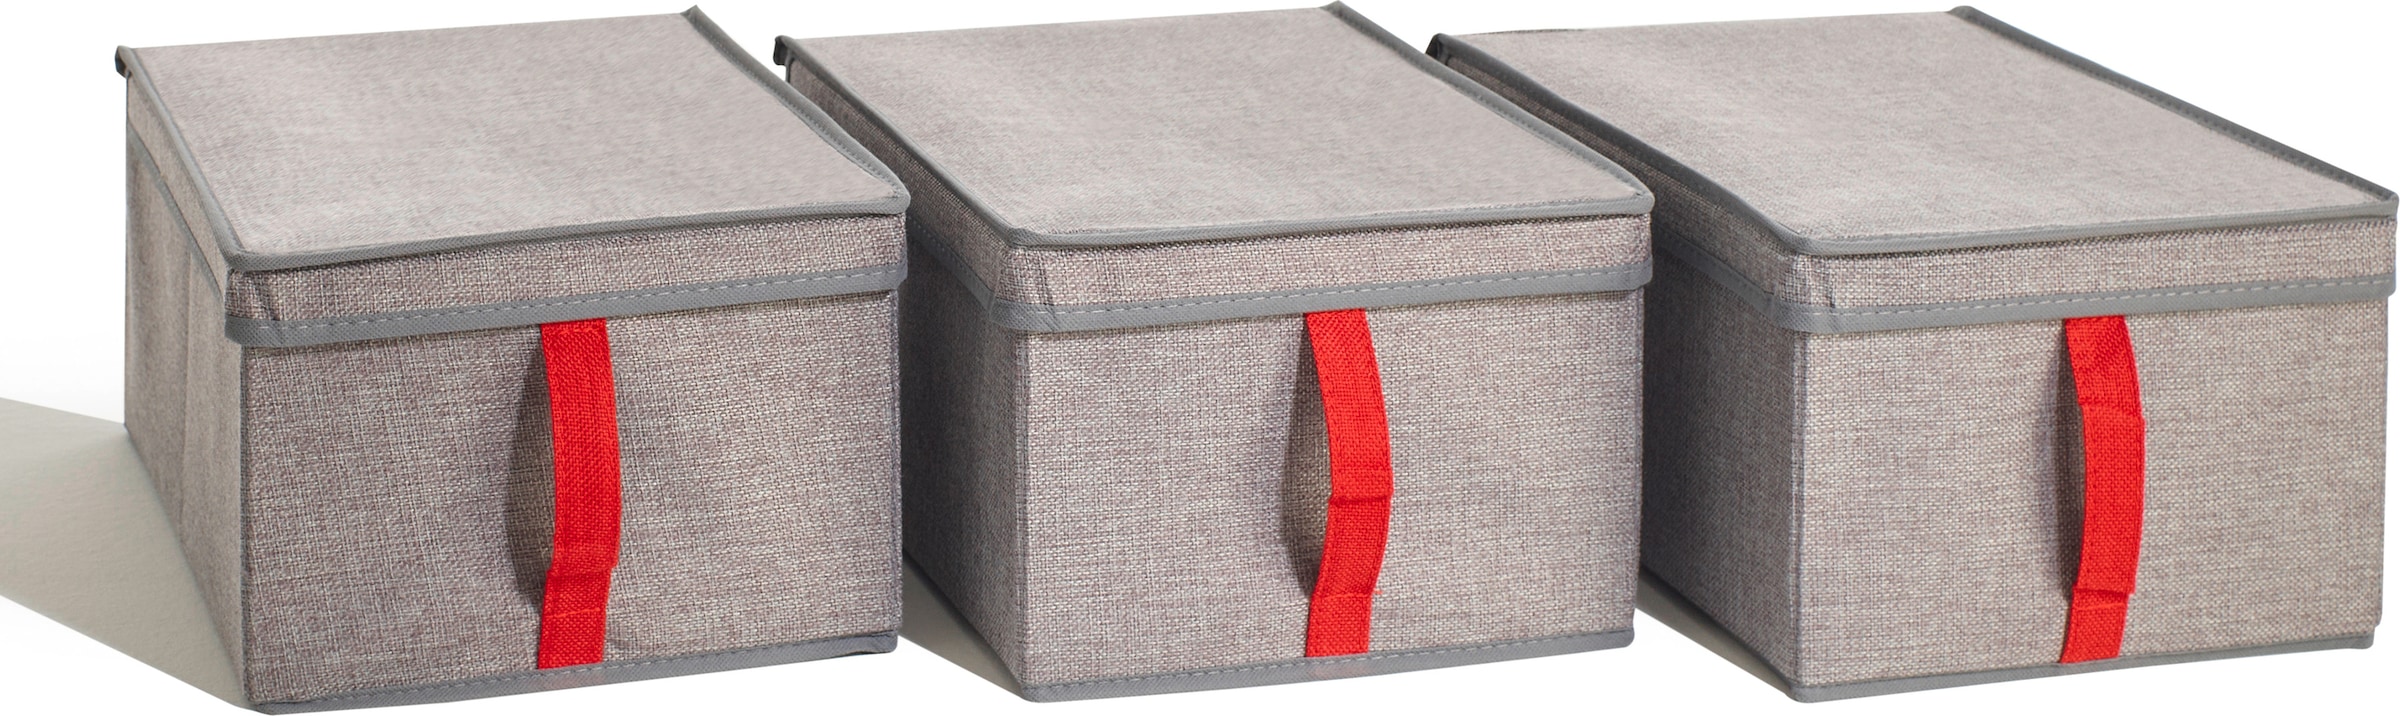 rauch Aufbewahrungsbox »Zubehör«, 3er Set Stoffboxen mit Deckel und roter Lasche